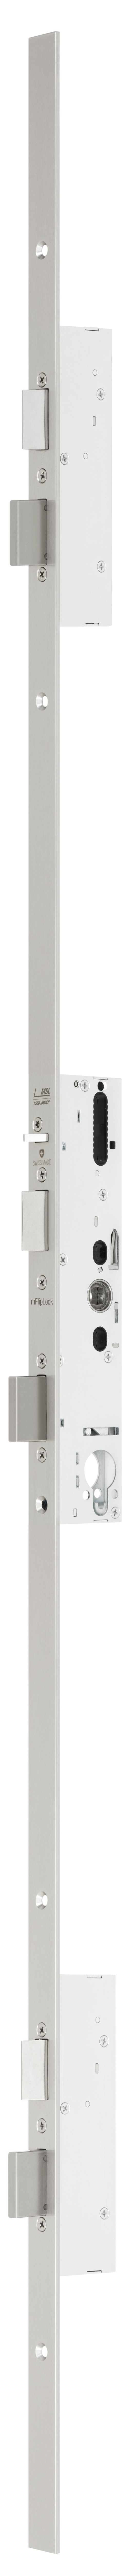 mFlipLock Sicherheits-Mehrpunktverriegelung 24421